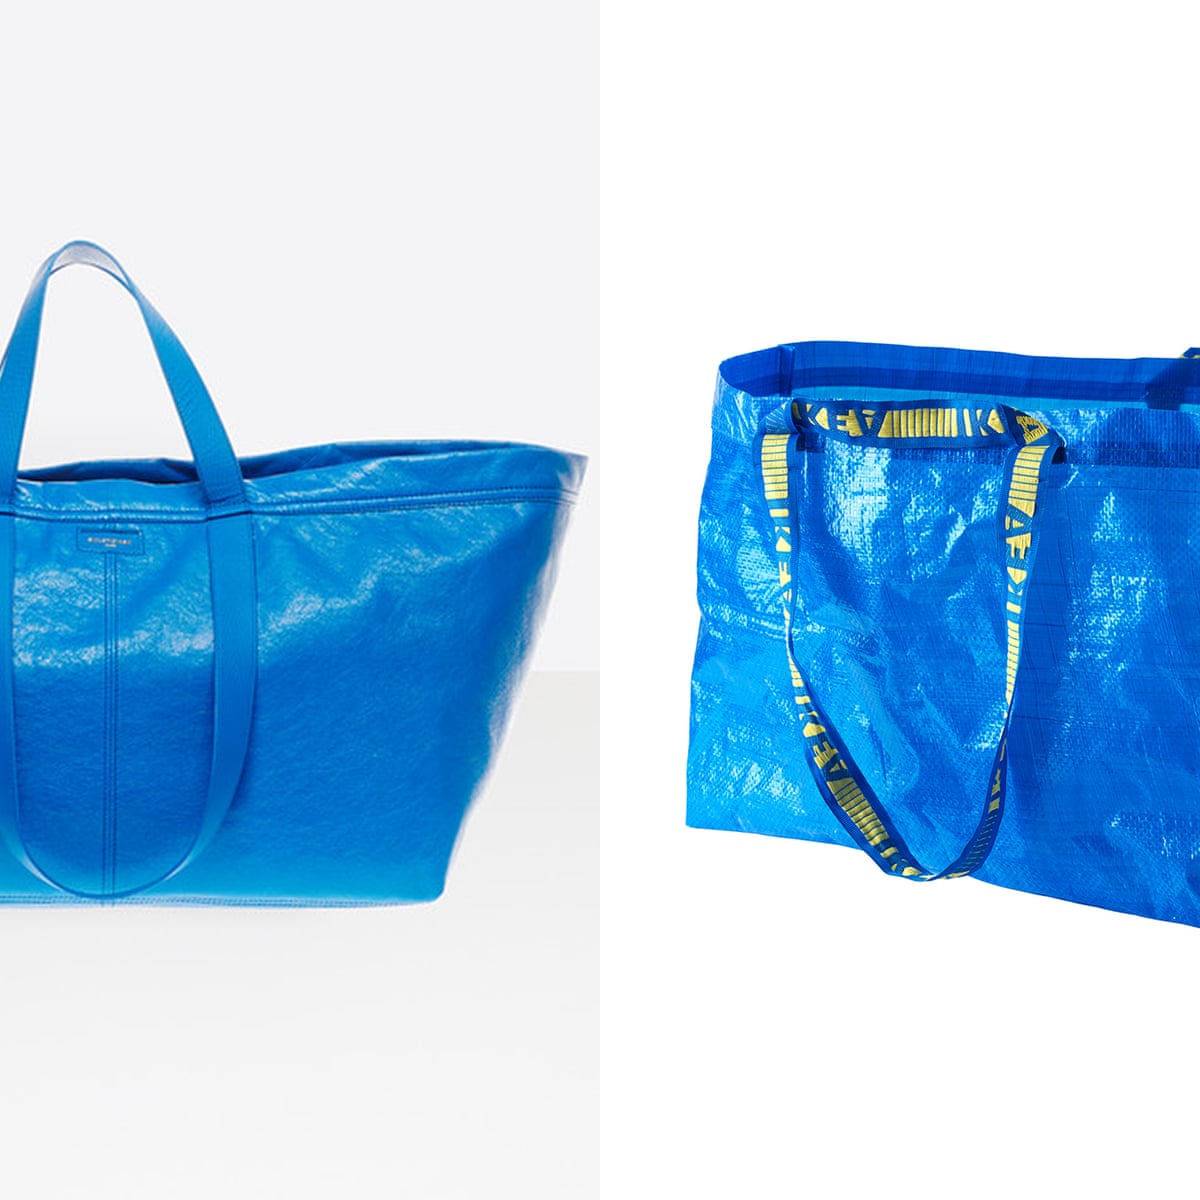 Obsession Compassion Aja Flat-pack fashion: Ikea takes swipe at Balenciaga's $2,150 shopping bag |  Fashion | The Guardian